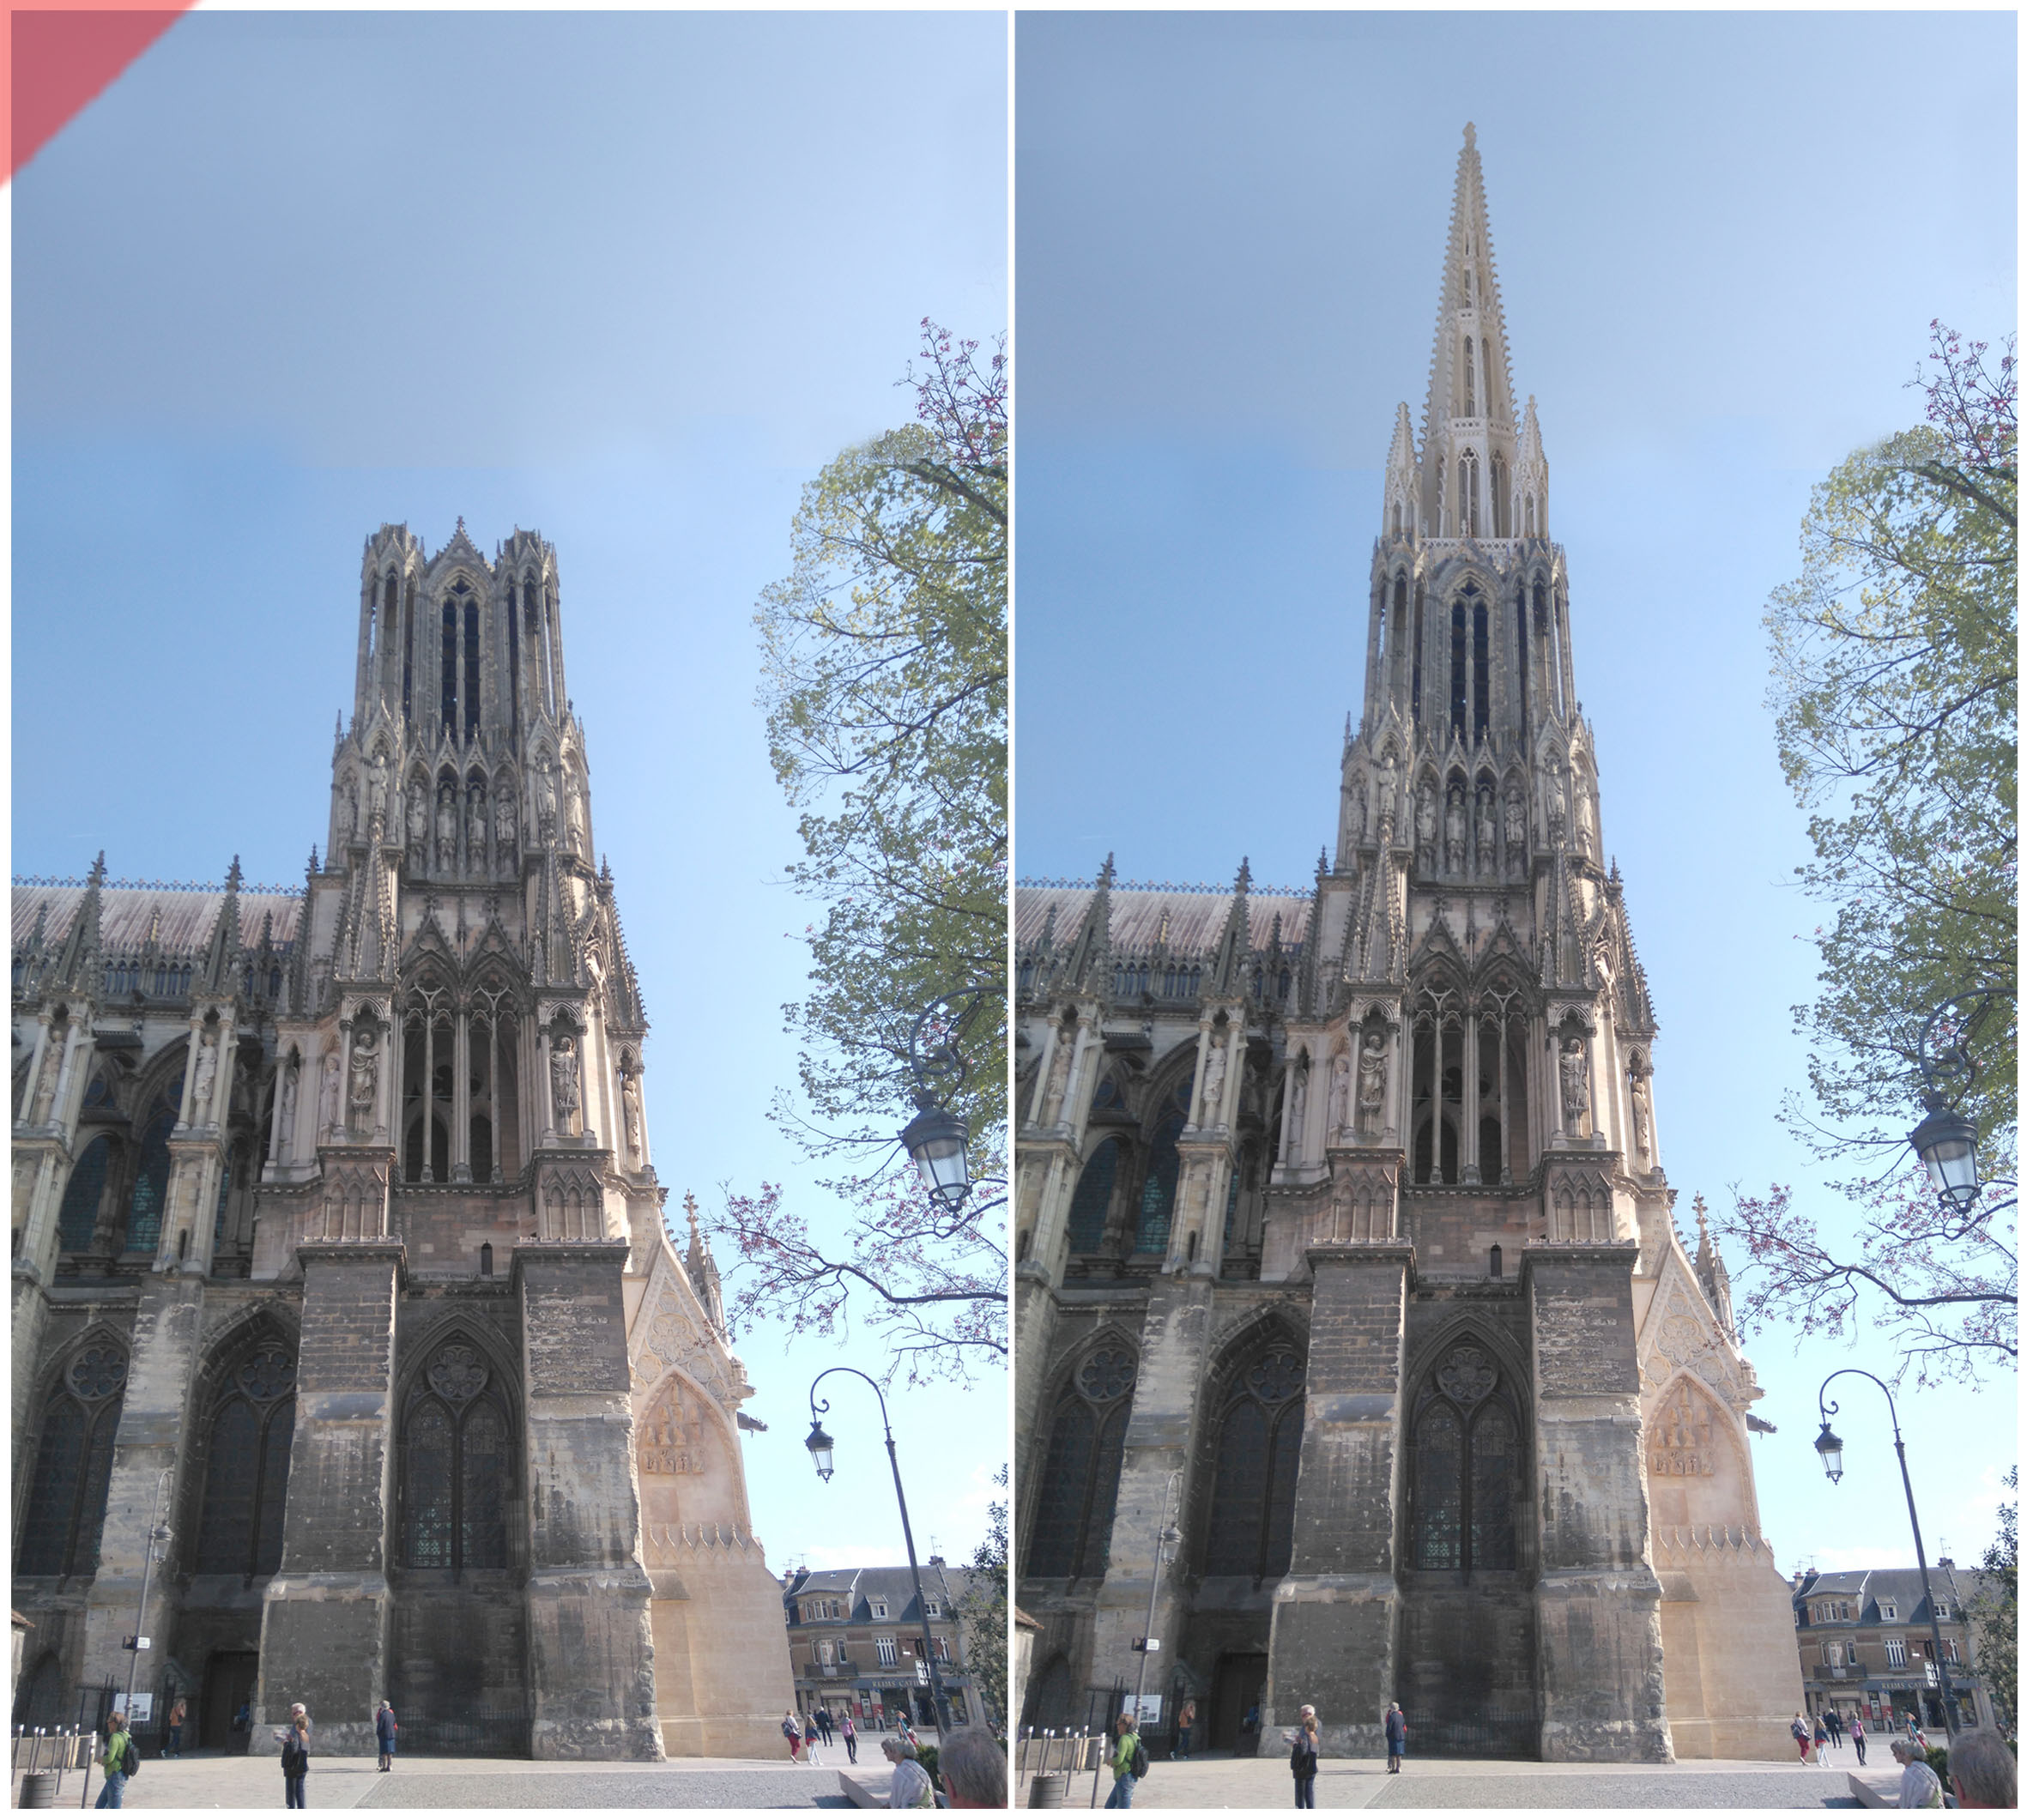 Reims-Cathédrale-Reims-tours-2-deux-prévu-toit-de-pierre-façade-ouest-Reims-cathedrale-2-two-towers-kathedrale-pitched-roof-stone-then-and-now